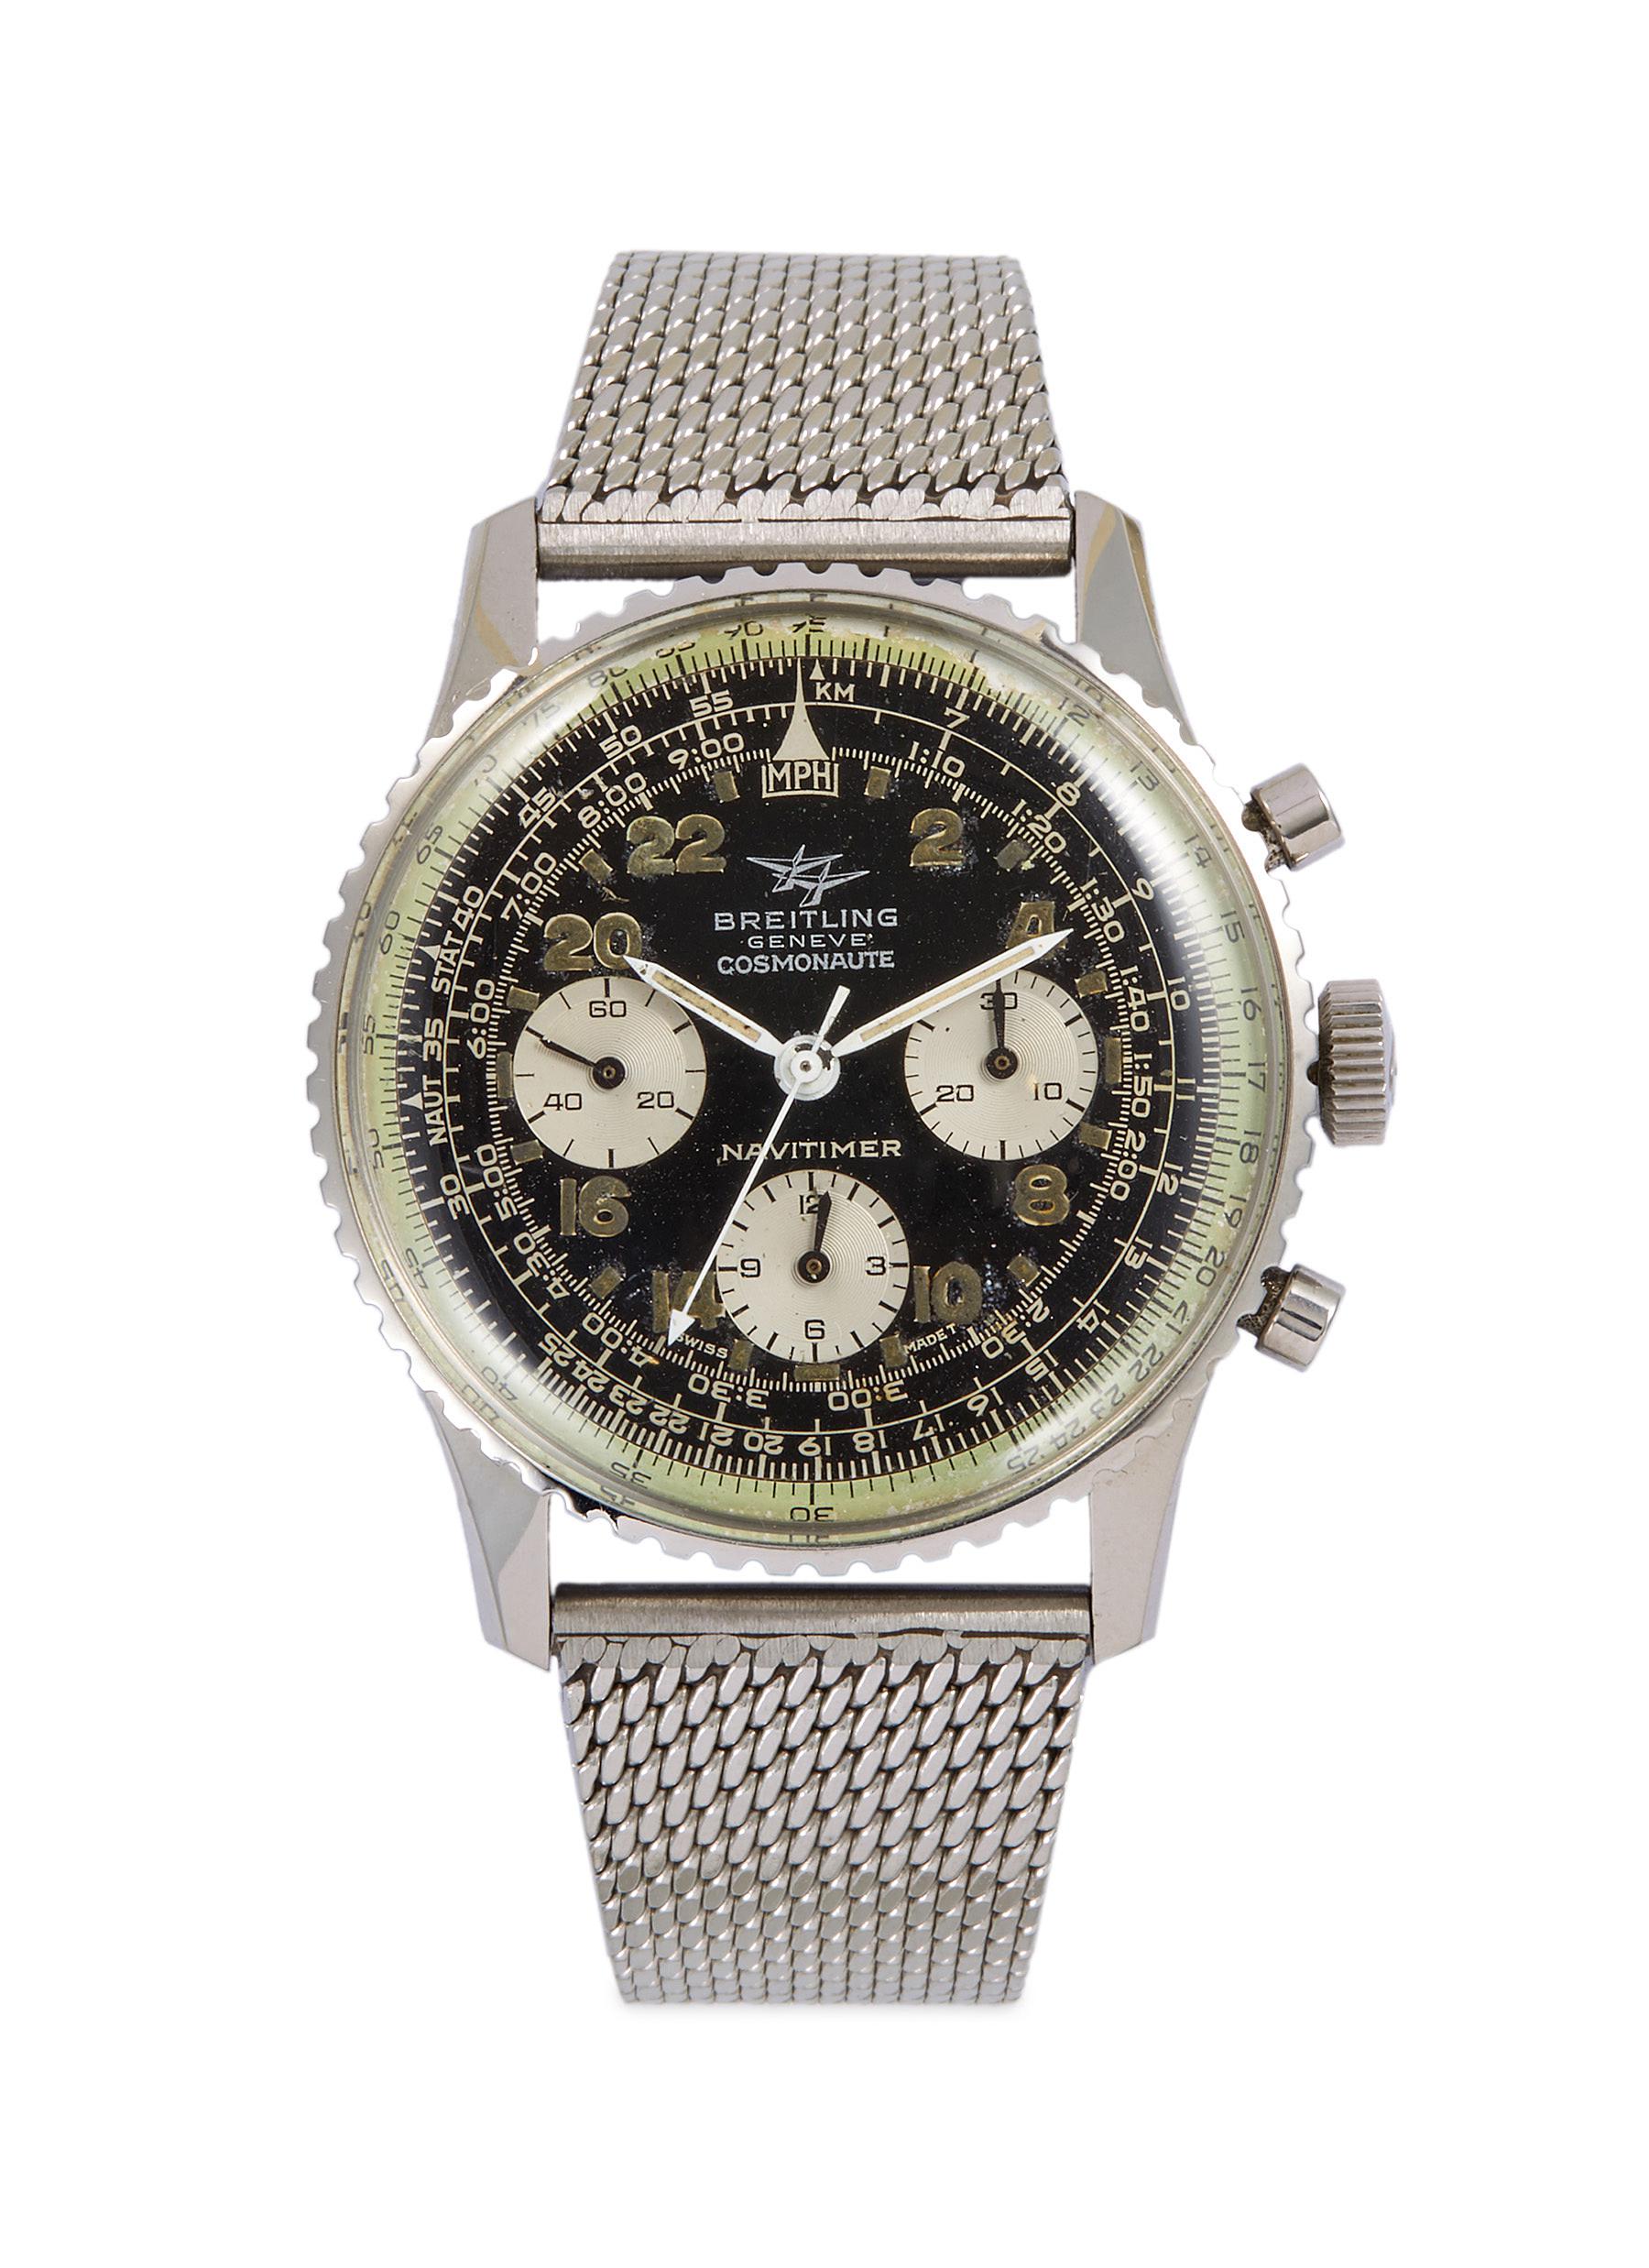 Vintage Crawford 14K White Gold Diamond Watch Wristwatch 17 Jewels Swiss |  eBay